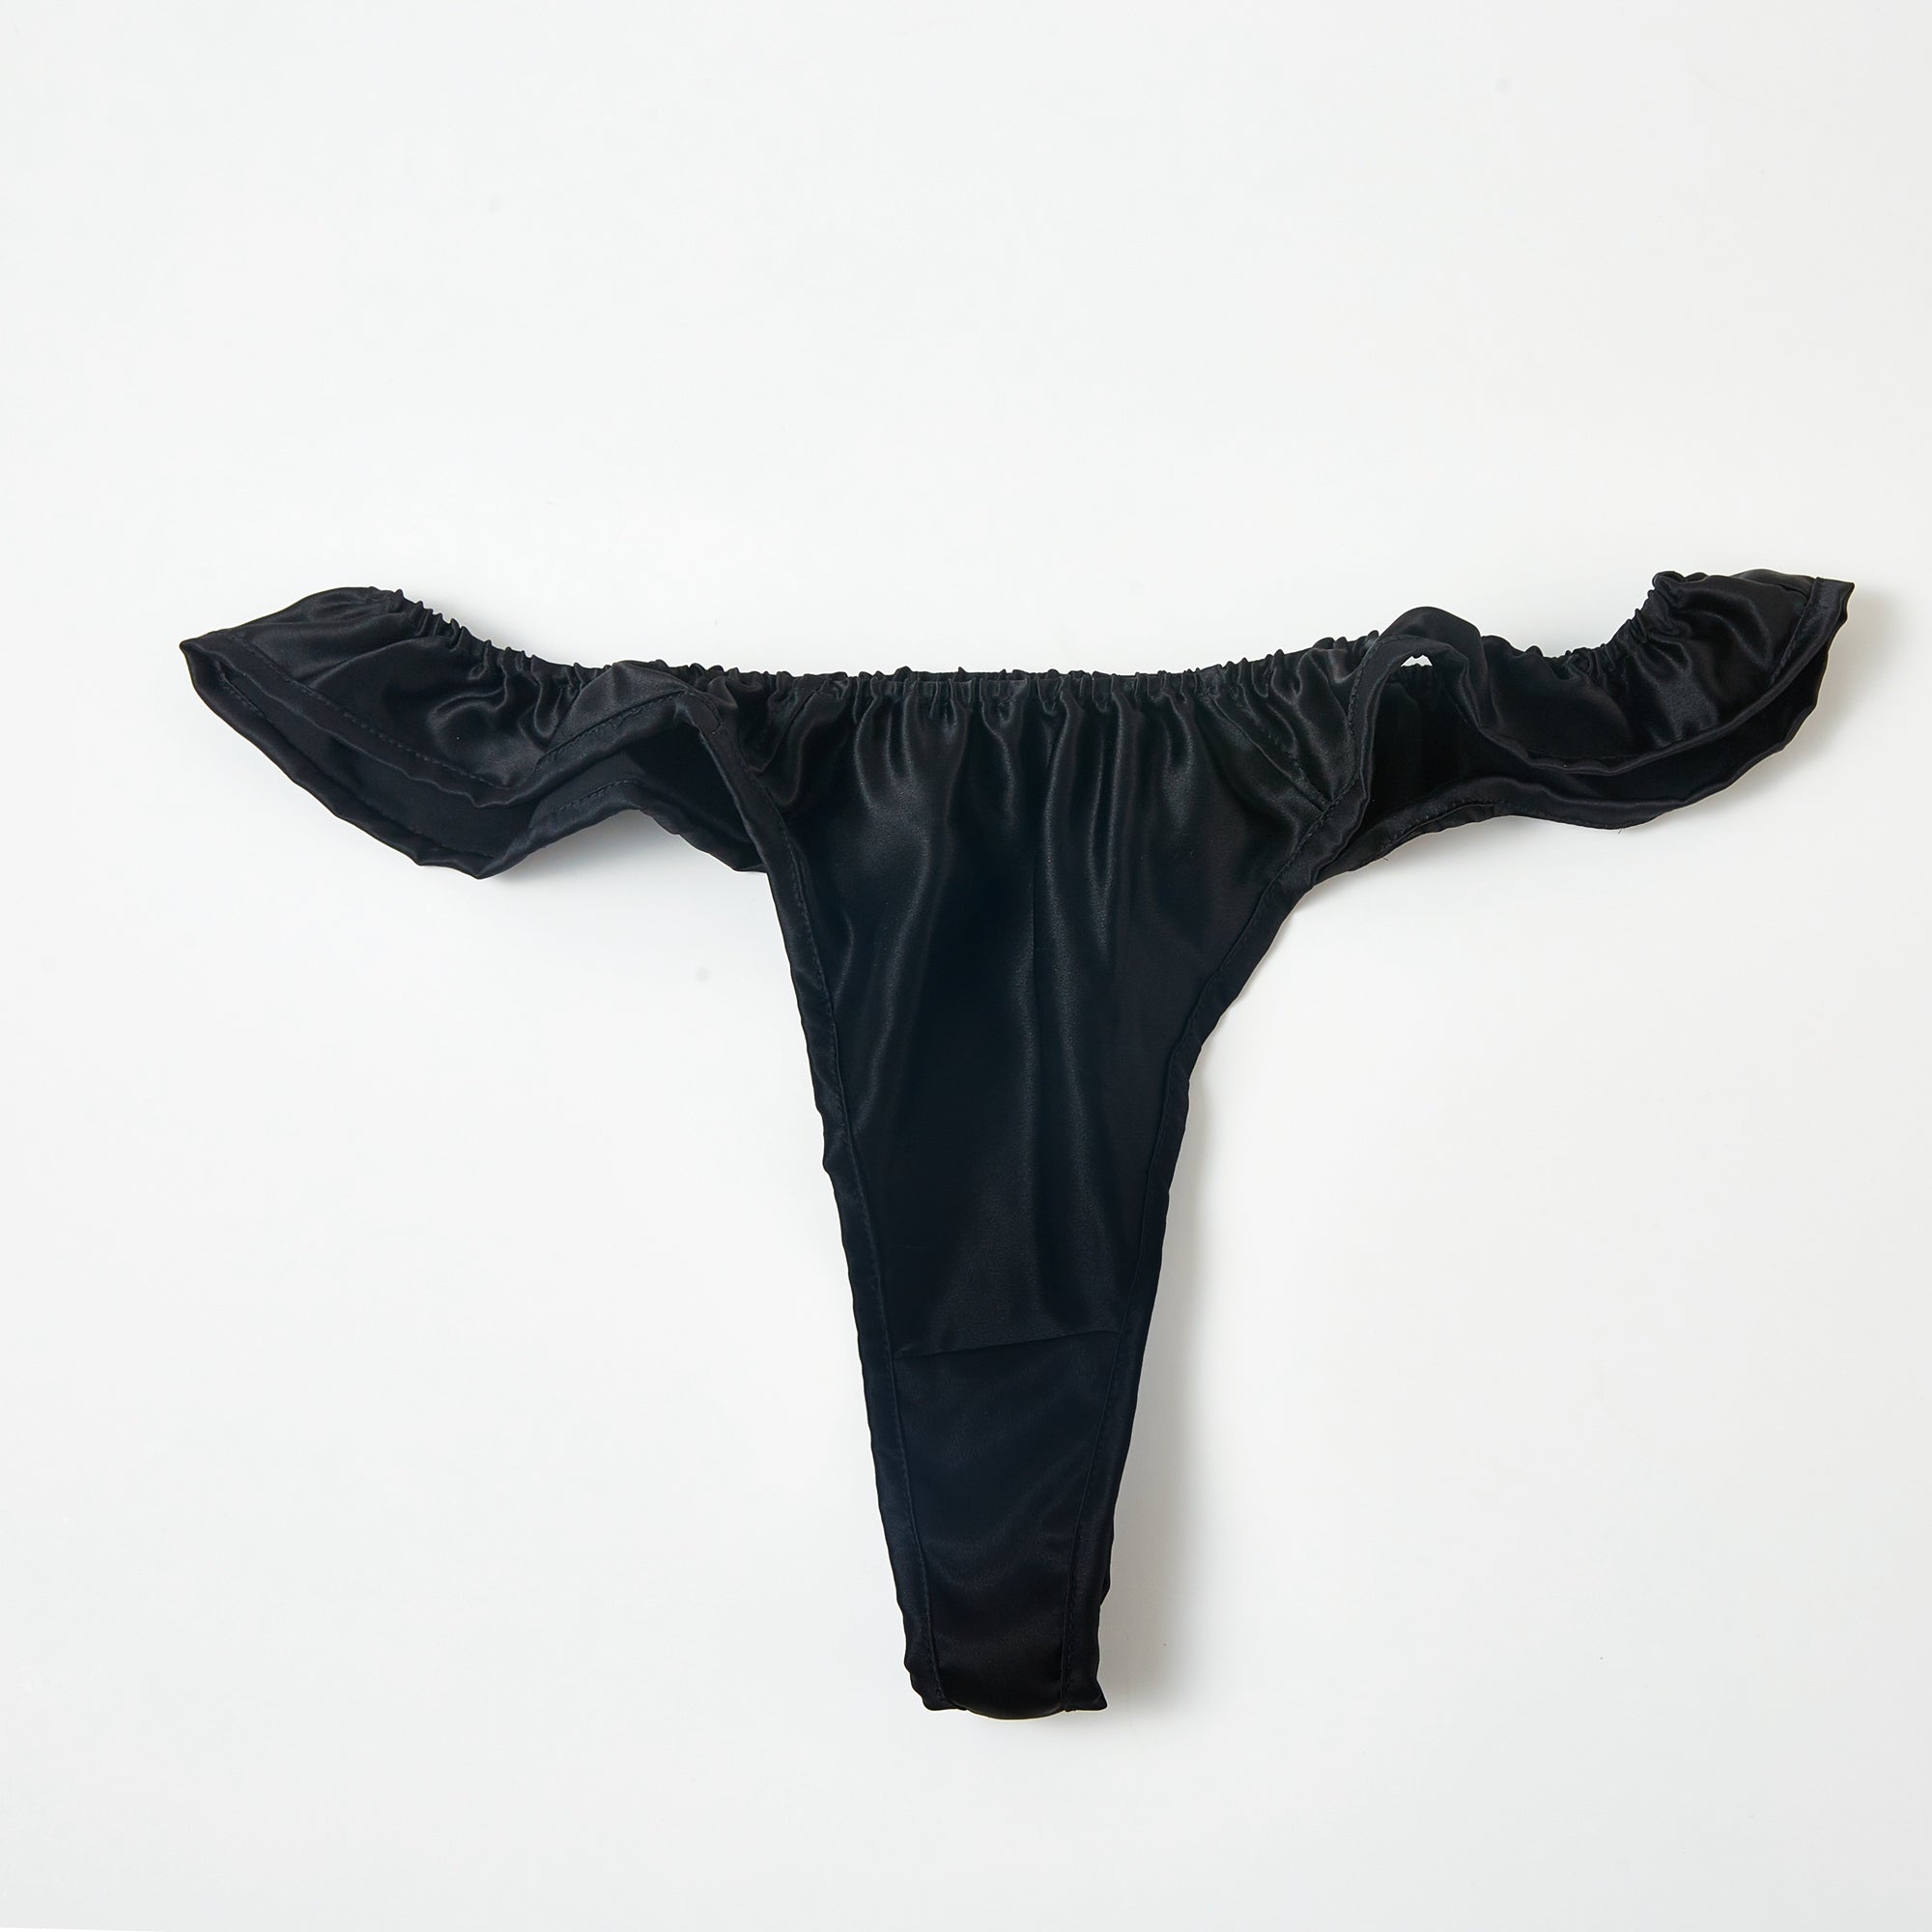 Men's Pure Silk Briefs 30 Momme 100% Mulberry Silk Undies Bikinis Underwear